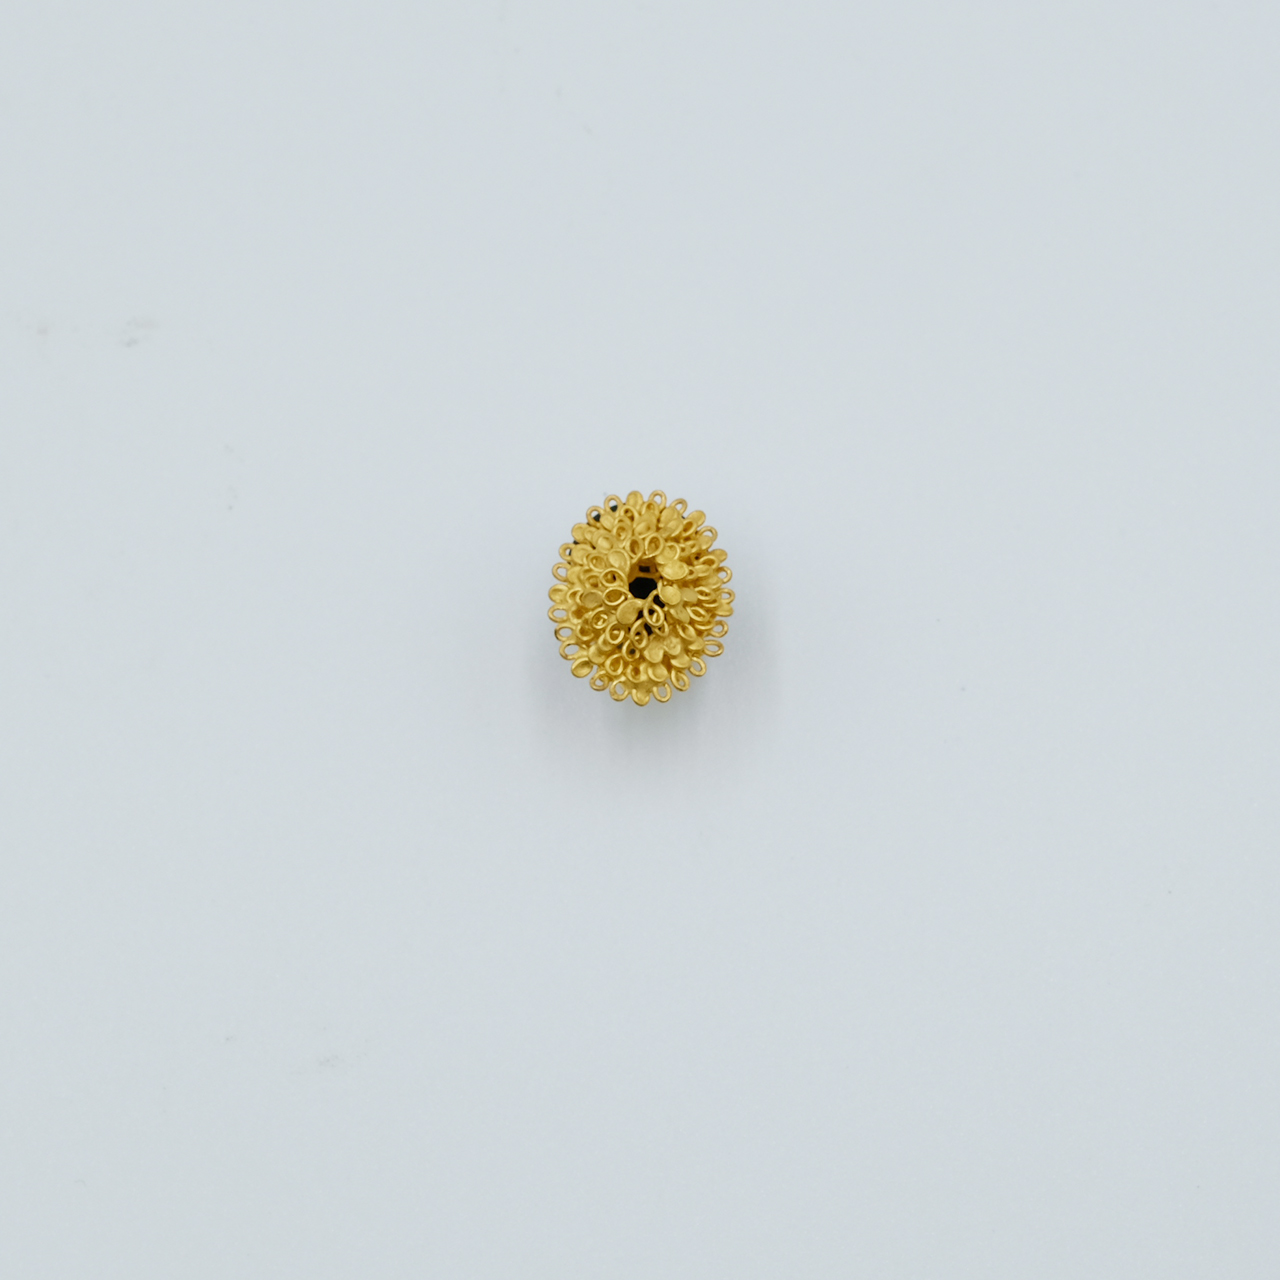 3 Small pin by Sayumi Yokouchi